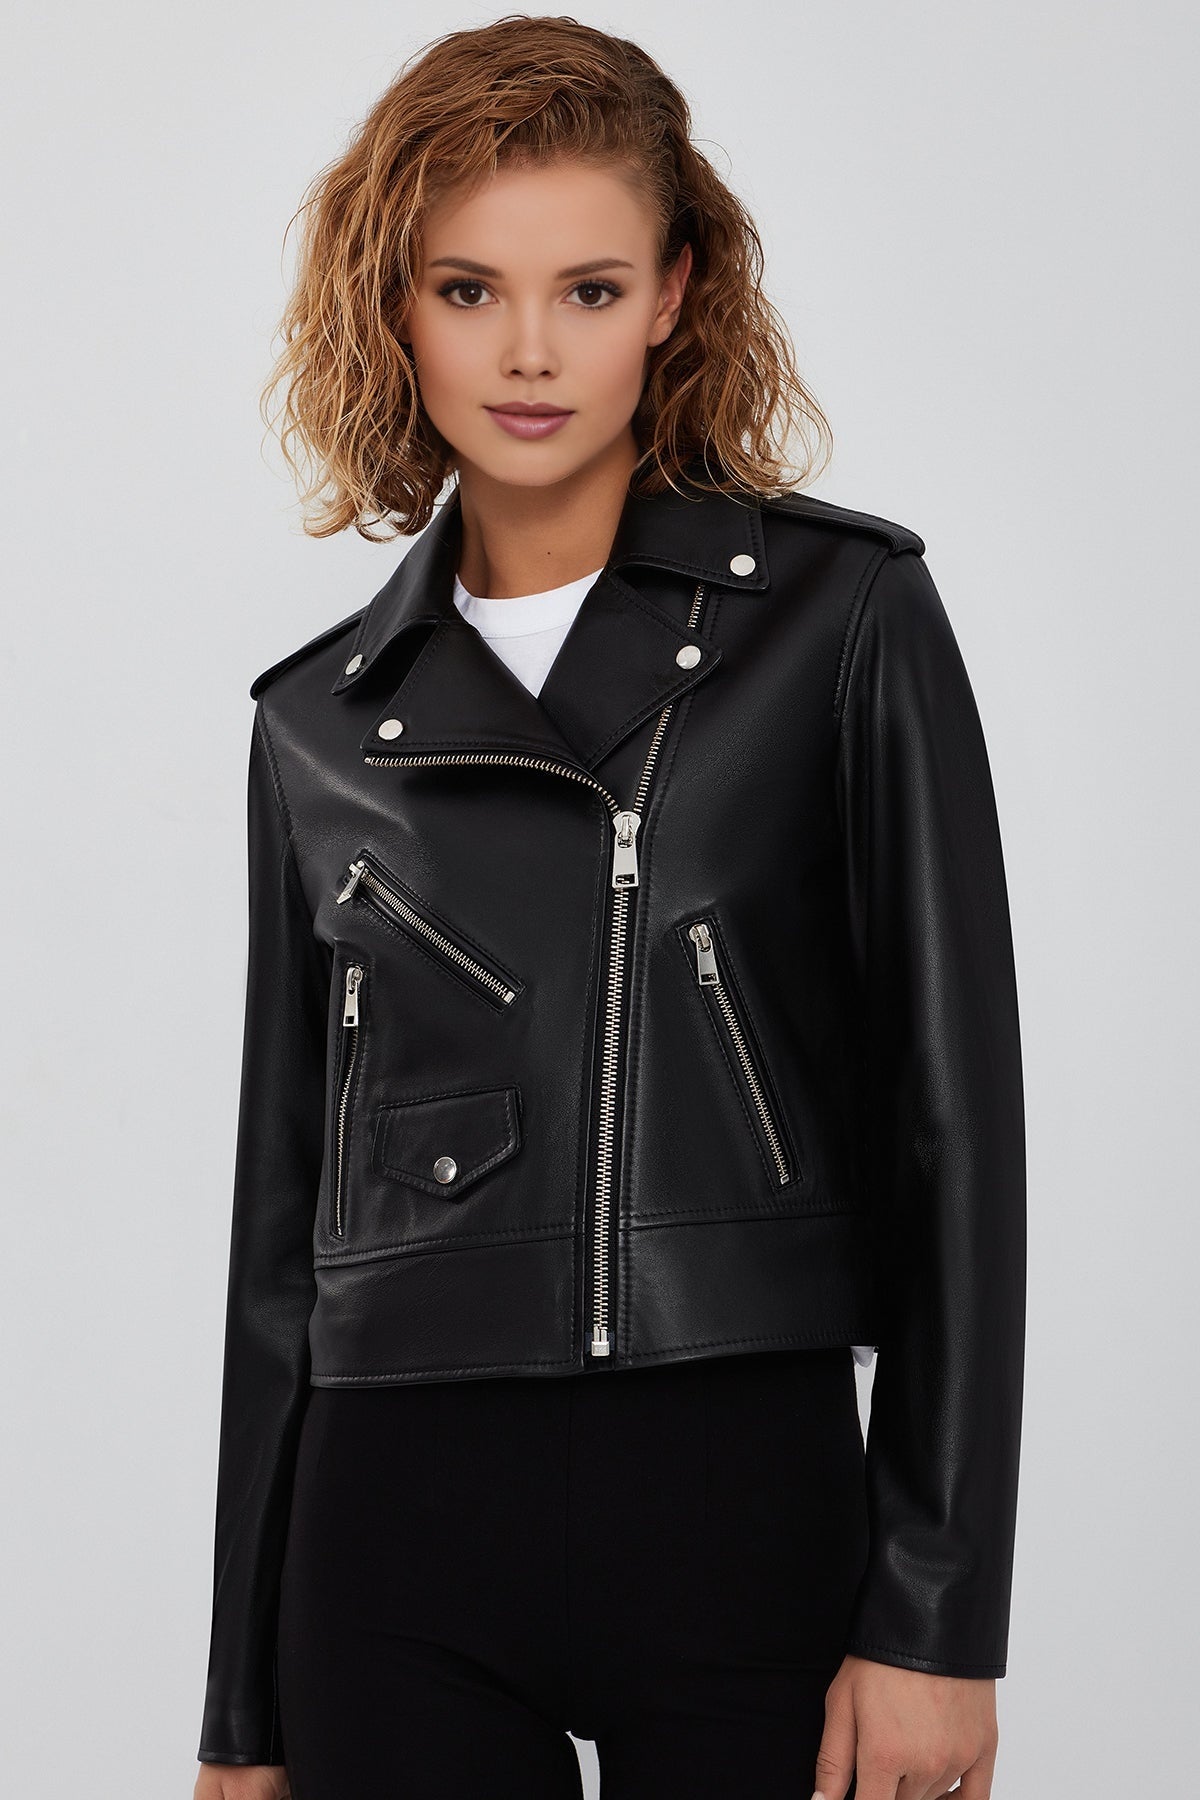 New Look Women's Black Biker Leather Jacket